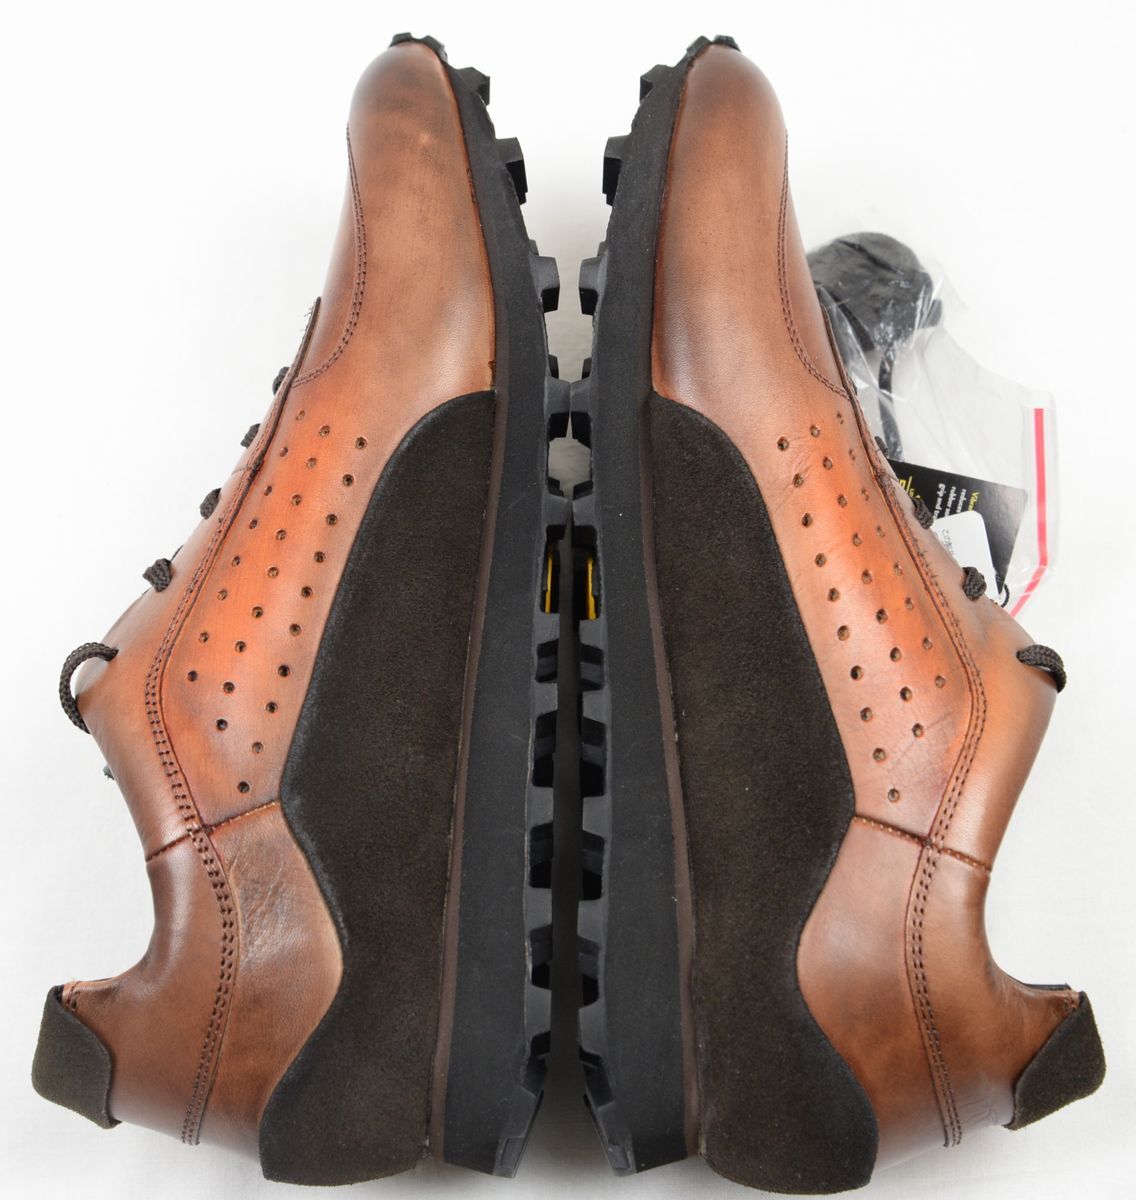 *madrasma гонг s мужской кожа спортивные туфли ( насыщенный коричневый комбинированный,25.0,DM5505G,VIBRAM подошва принятие ) новый товар 